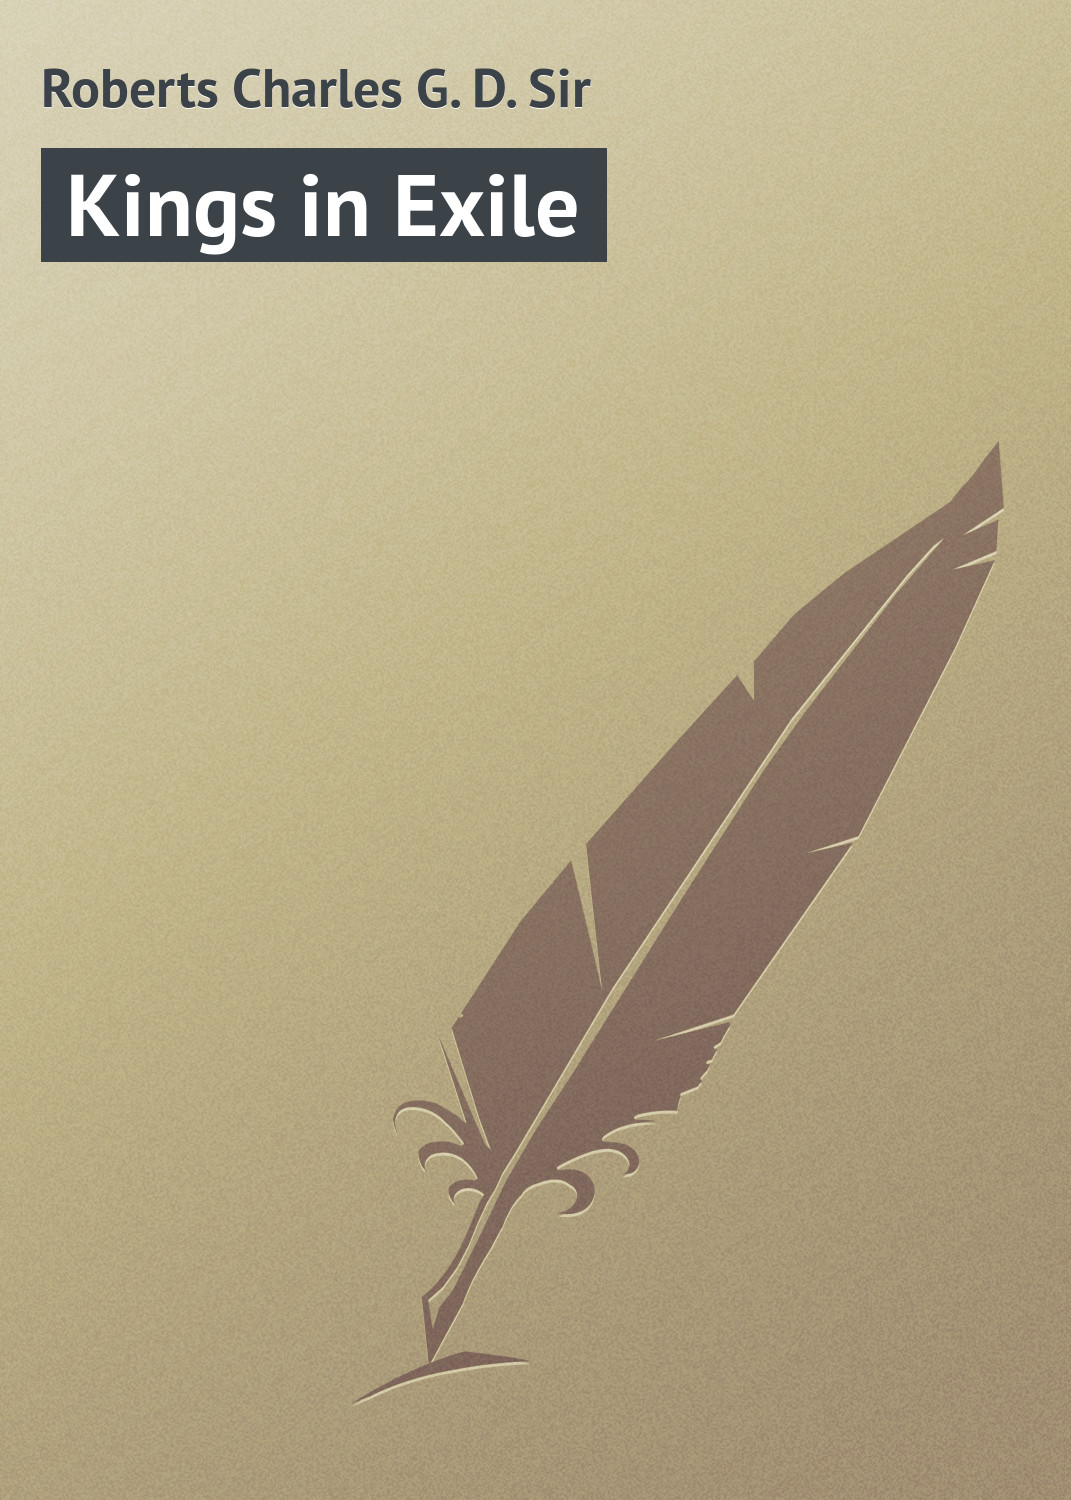 Книга Kings in Exile из серии , созданная Charles Roberts, может относится к жанру Анекдоты, Природа и животные, Зарубежная классика, Зарубежный юмор, Иностранные языки. Стоимость электронной книги Kings in Exile с идентификатором 23171539 составляет 5.99 руб.